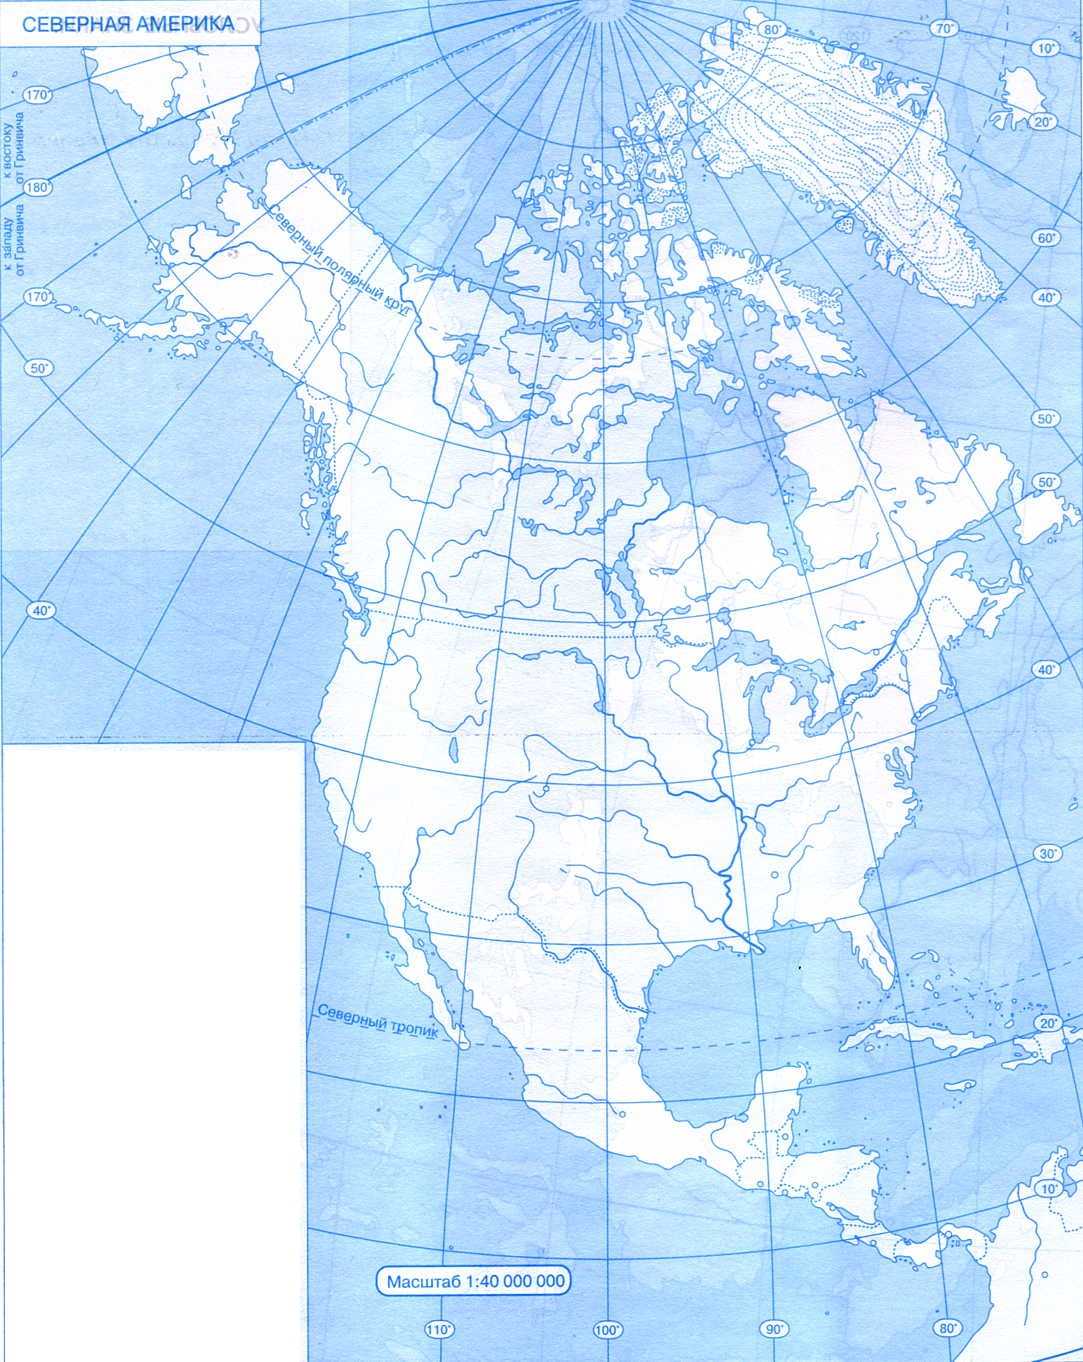 Объекты северной америки 7 класс контурные карты. Карта Северной Америки контурная карта. Контурная ката Северной Омерики\. Контурная карта севернойтамерики. Контурная карта севеонойа мерики.